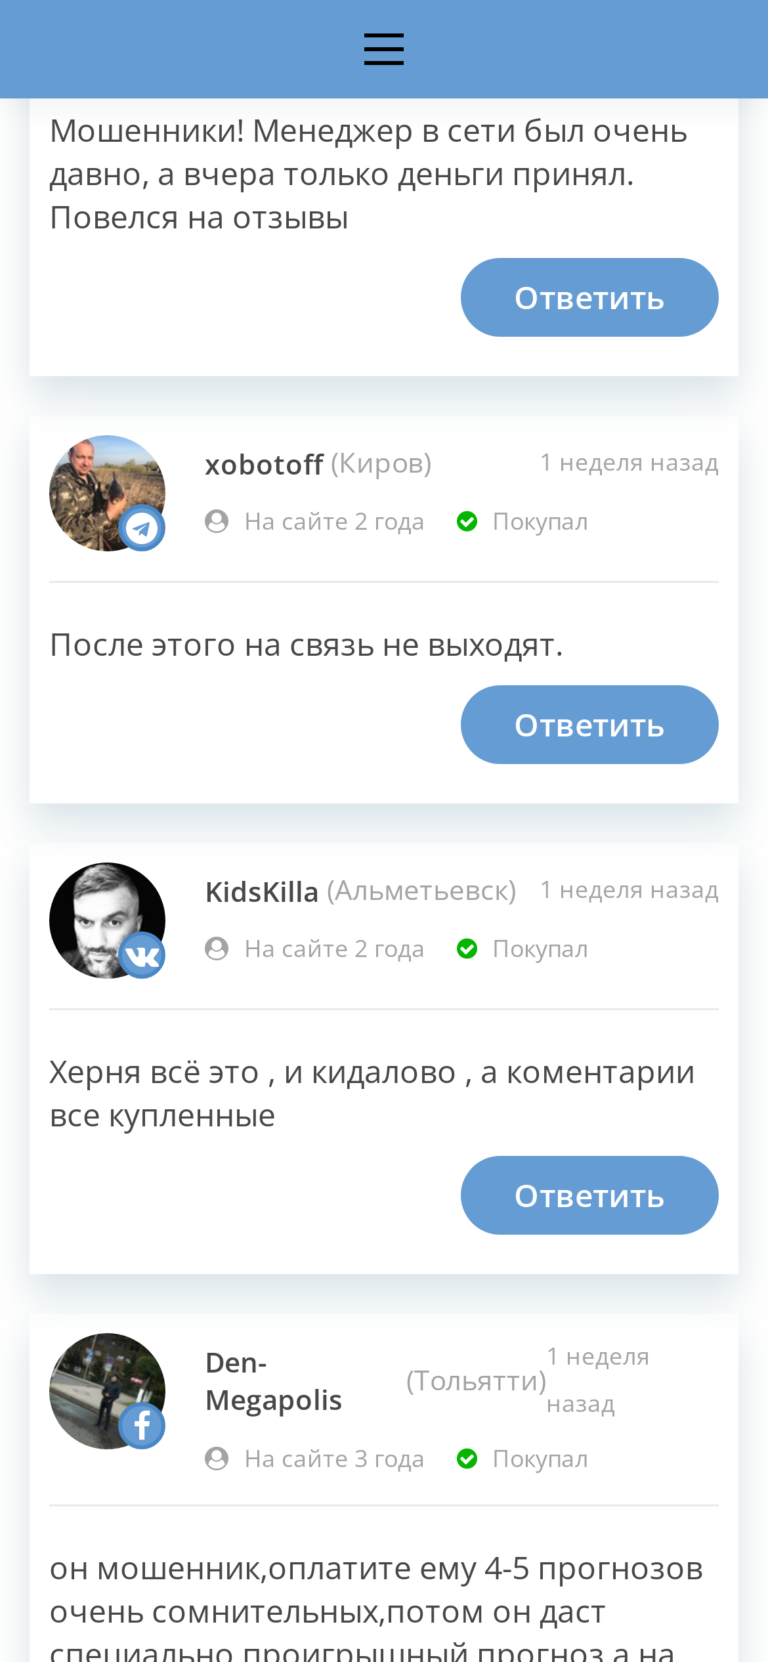 Сергей Медведев отзывы